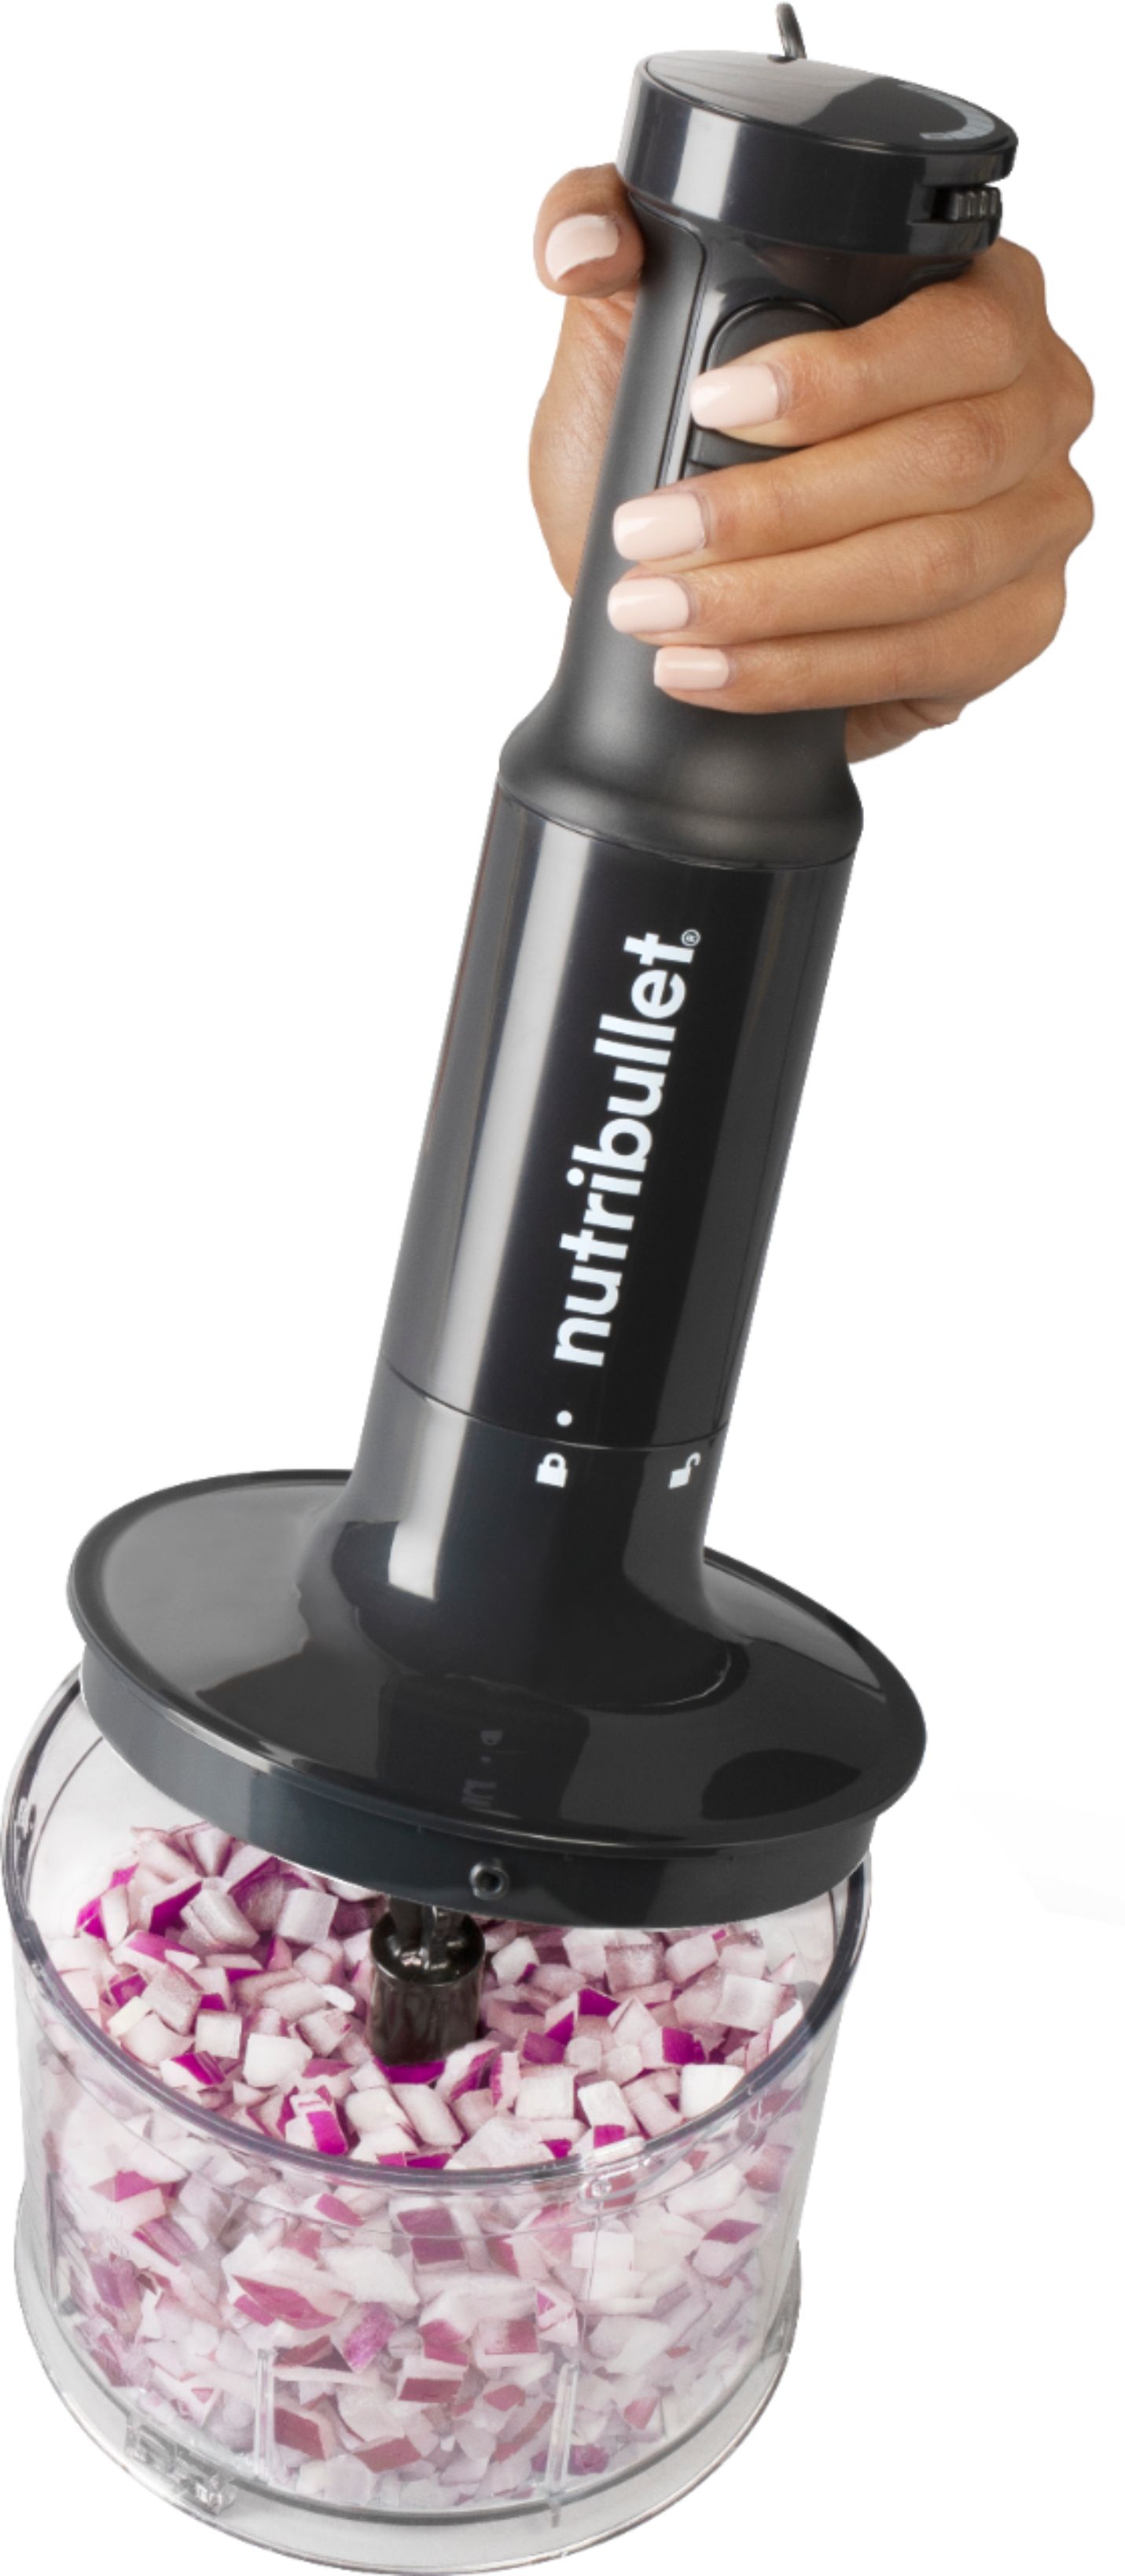  Nutribullet Immersion Blender – Deluxe Set, Black, 30 oz: Home  & Kitchen